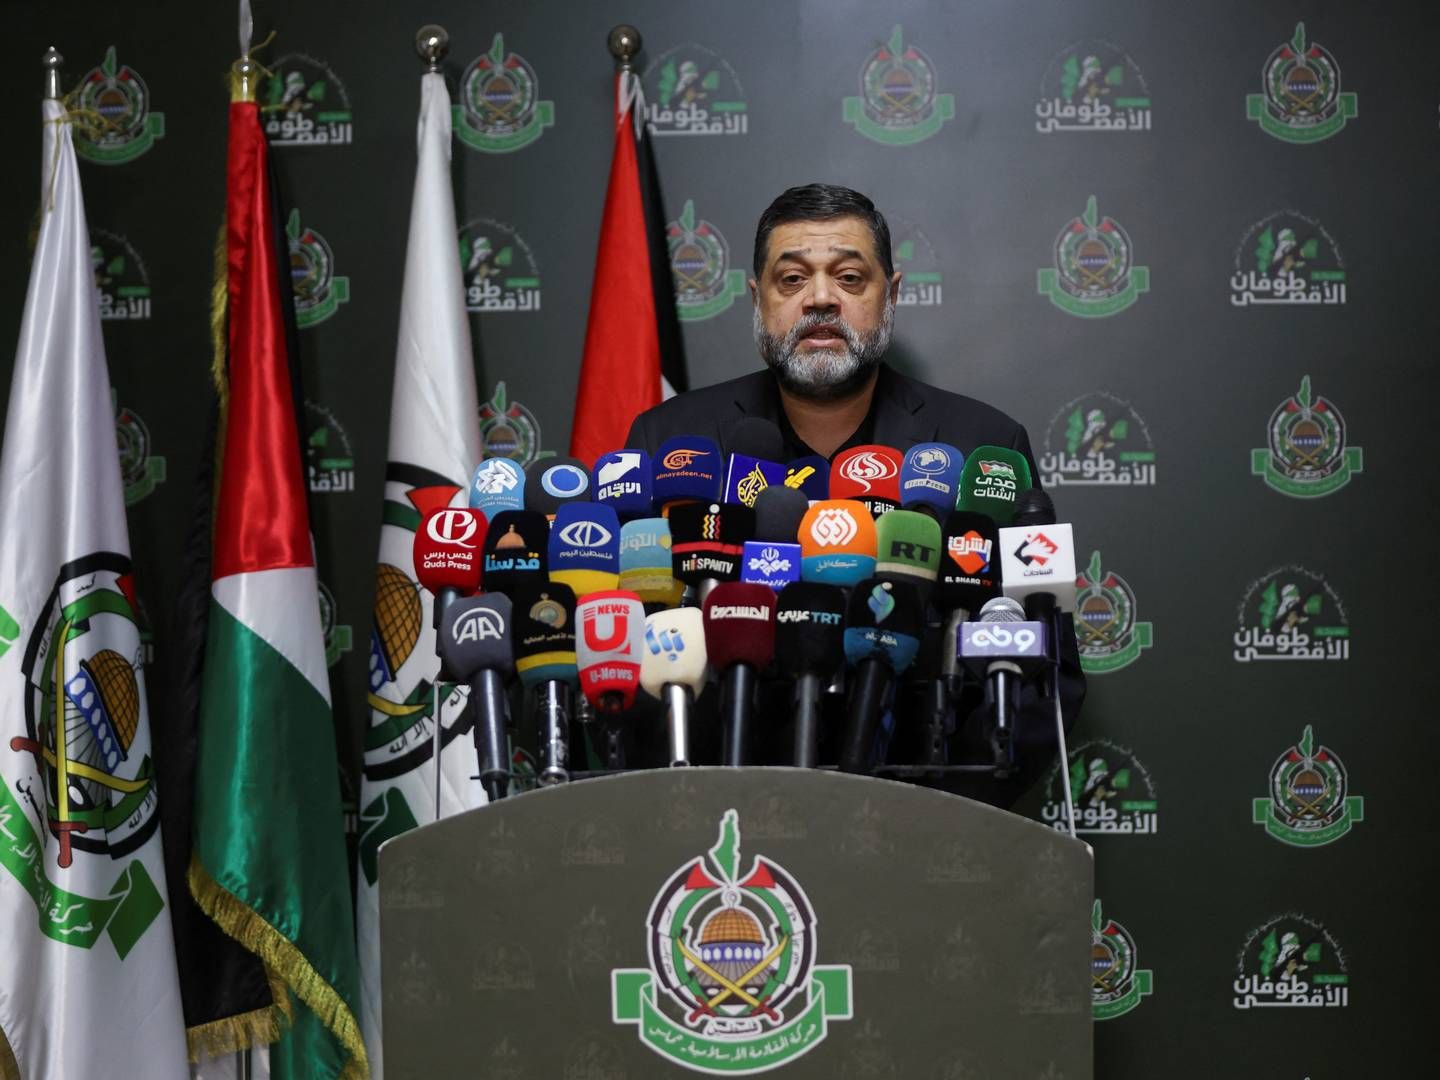 Osama Hamdan er international talsmand for Hamas, og han blev for nogle dage siden interviewet af Rasmus Tantholdt fra TV 2, og i interviewet rettede han en tak til demonstranterne til de danske Palæstina-demonstrationer, som flere fagforeninger har bakket op om. | Photo: Mohamed Azakir/Reuters/Ritzau Scanpix